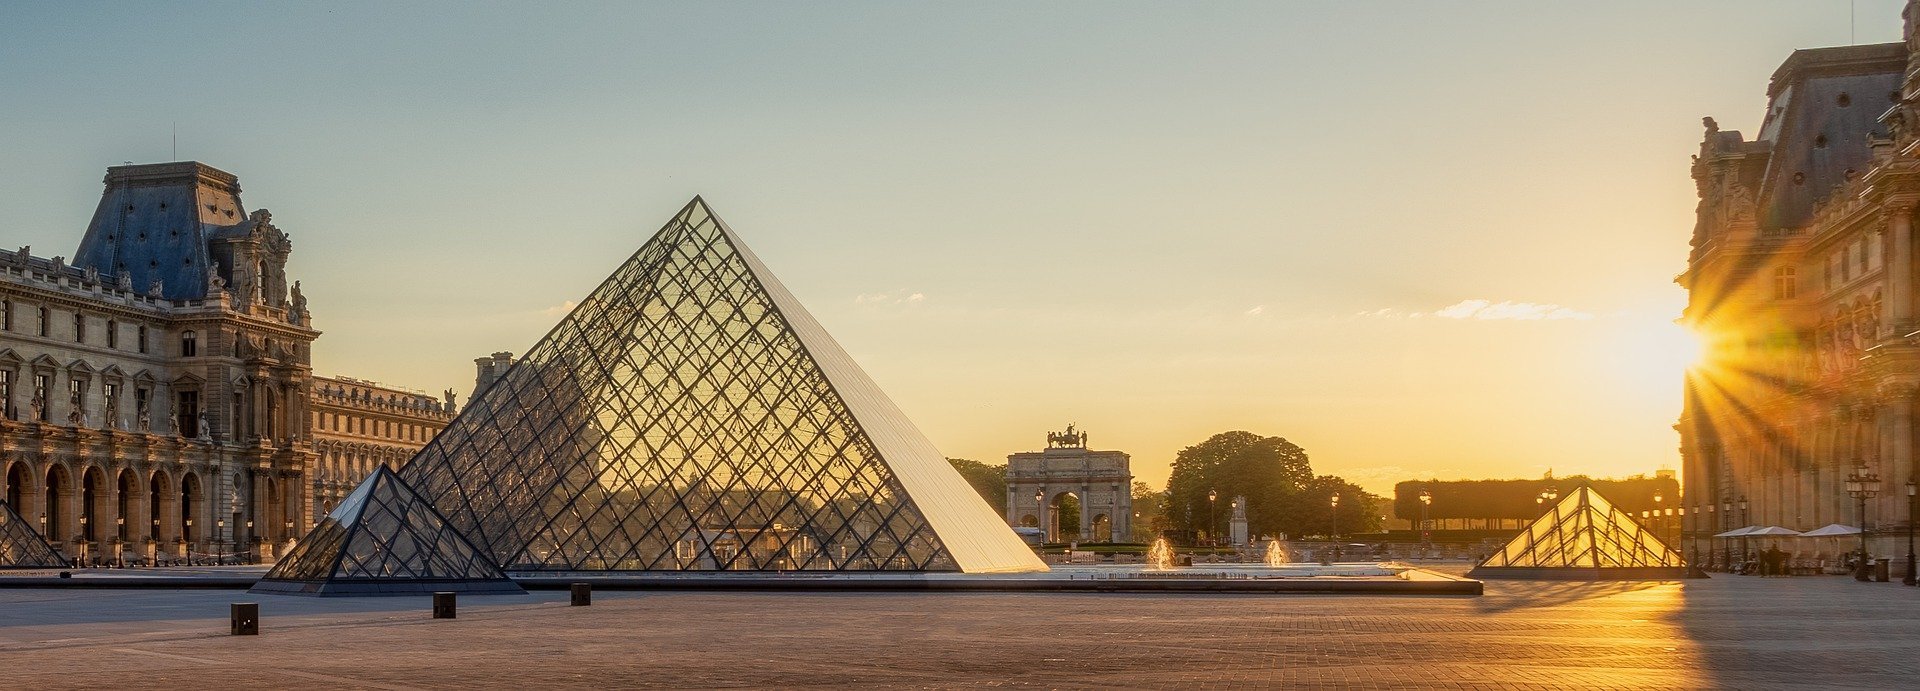 Musée de Louvre. | Photo : Pixabay